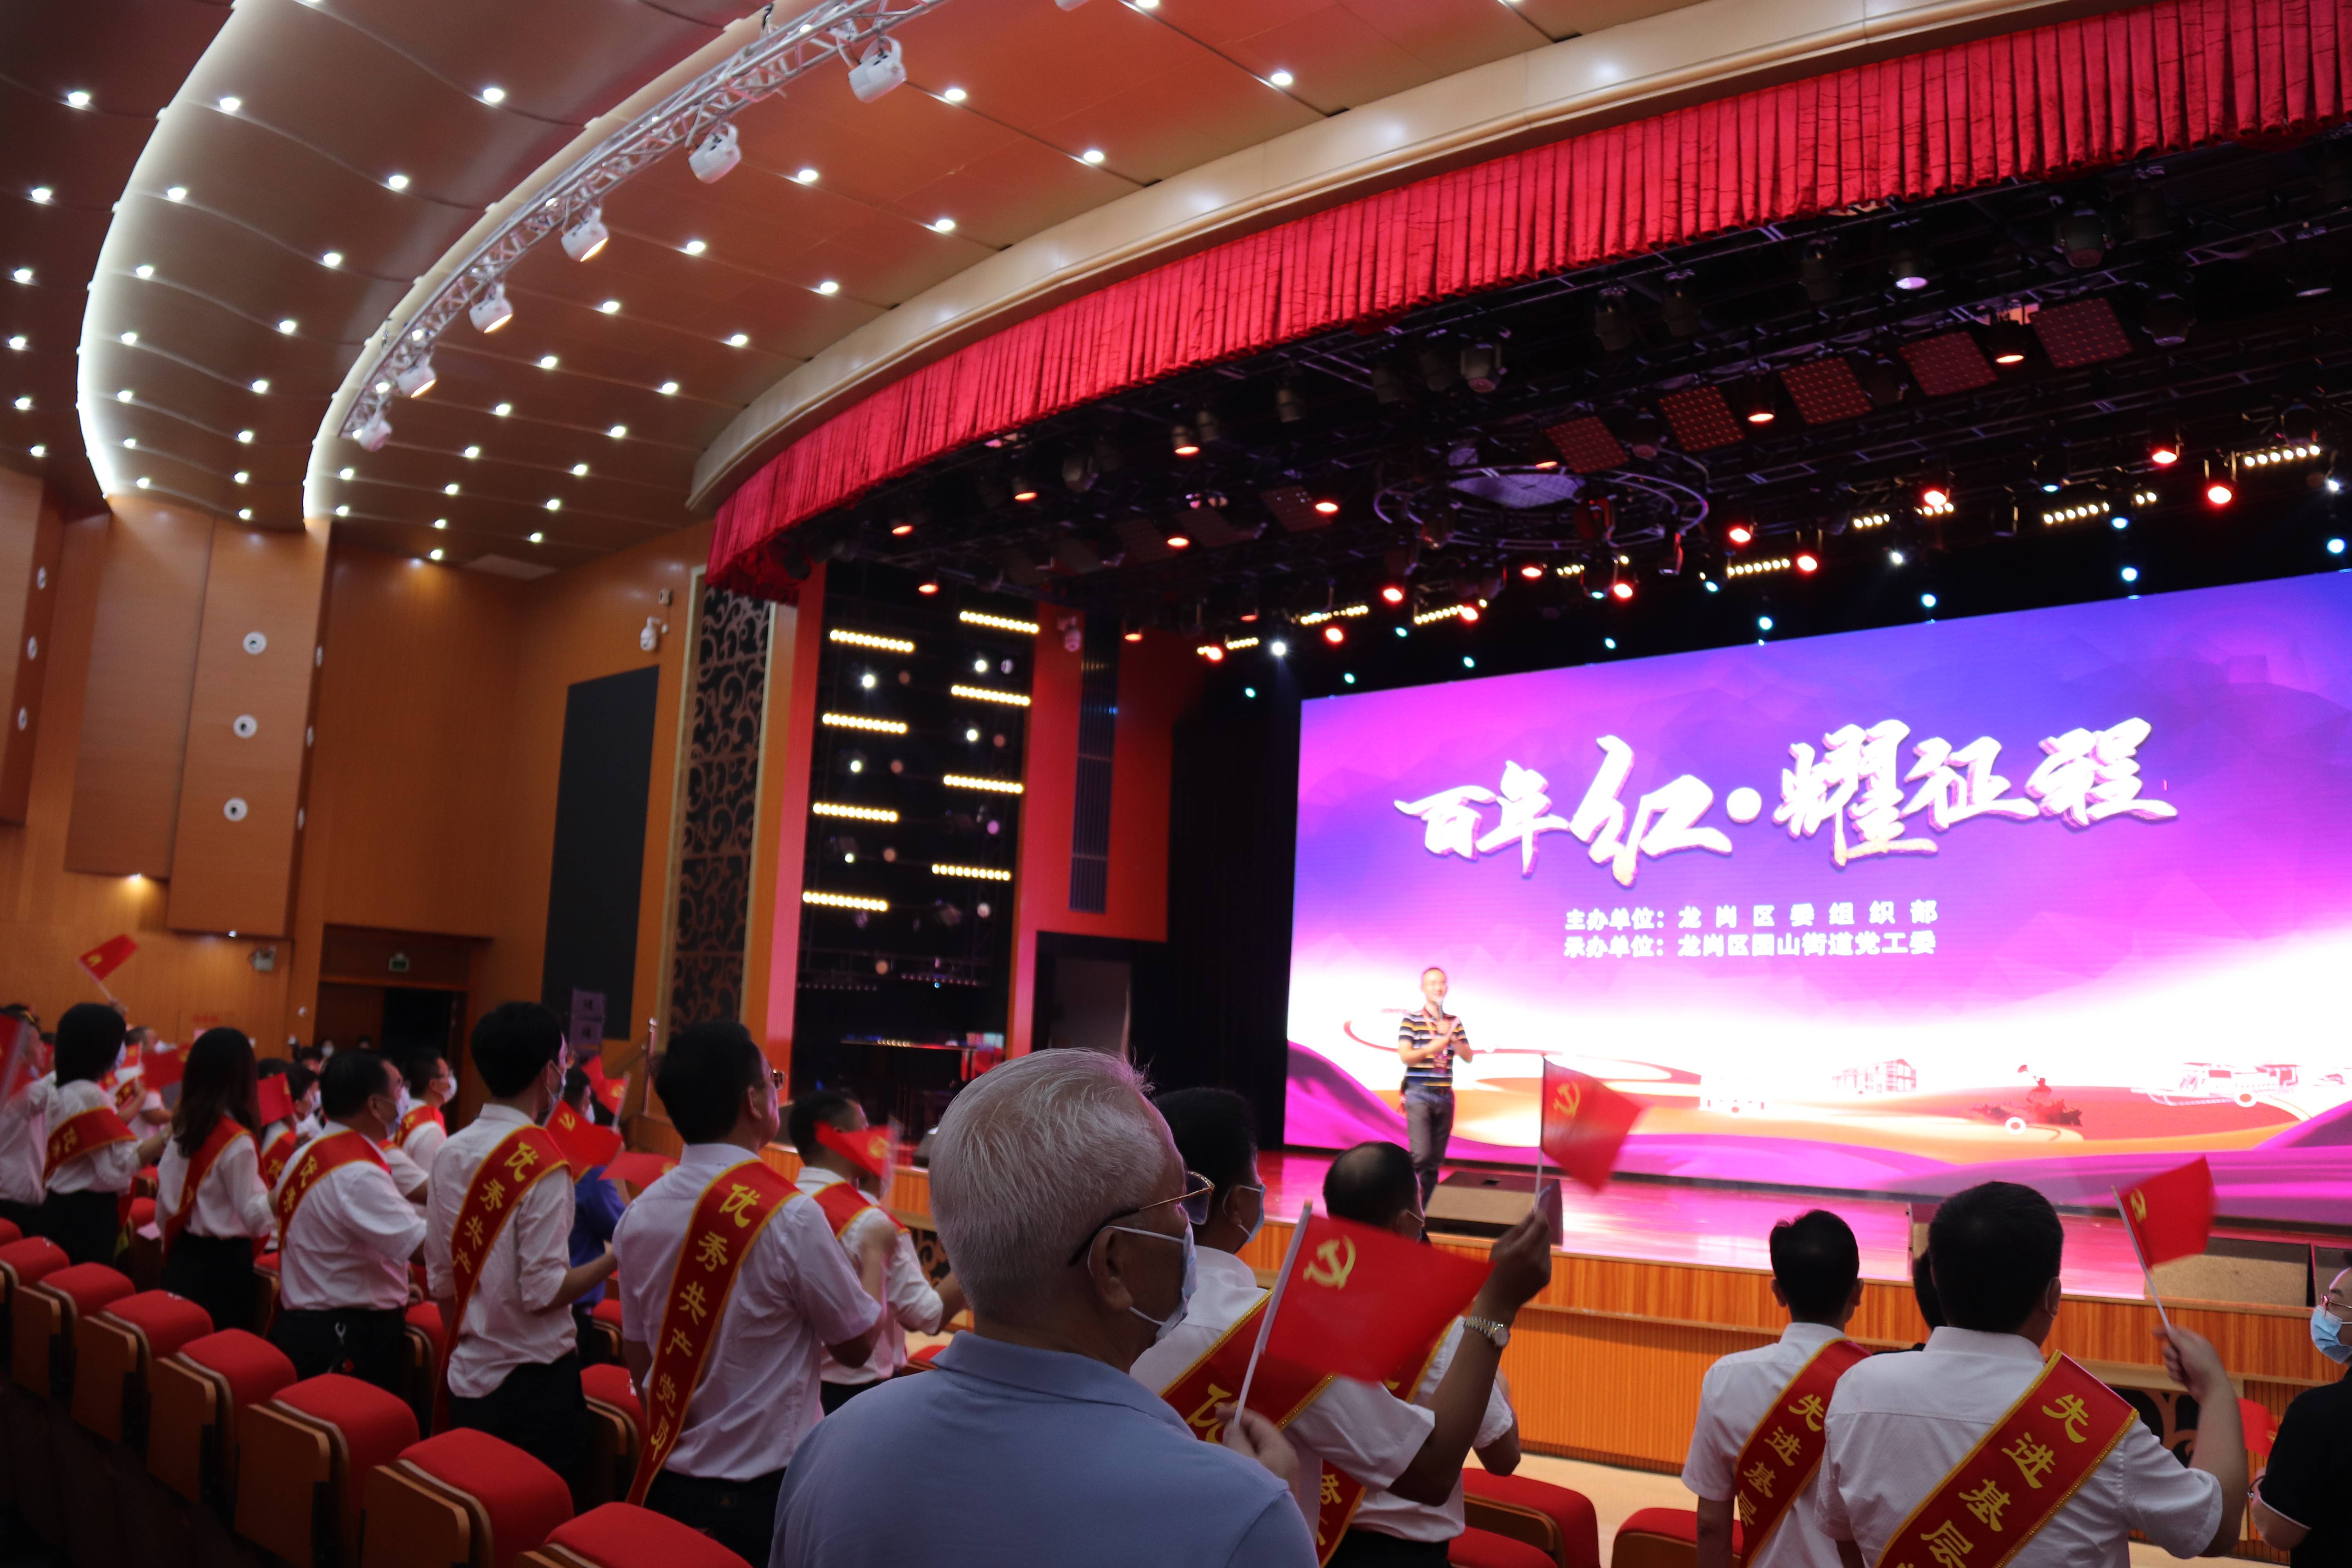 薪火相传！“深圳声乐季·中国声乐轻骑兵公益音乐沙龙”在龙岗举行